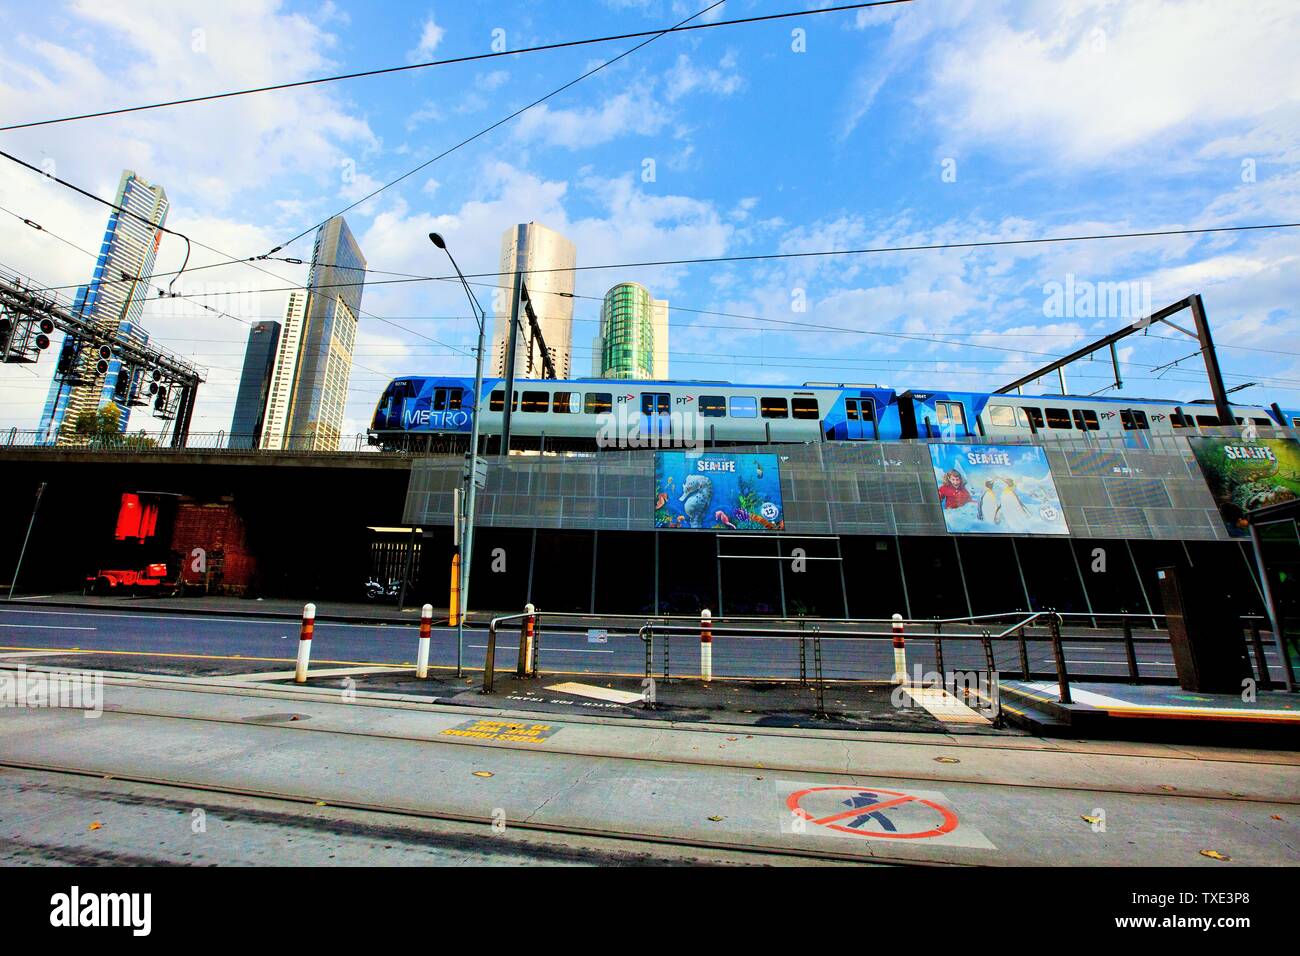 Metro train over Sea Life Aquarium, Melbourne, Australia Stock Photo